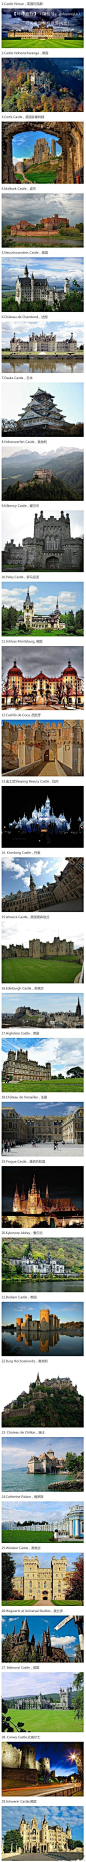 世界上最漂亮的29个城堡